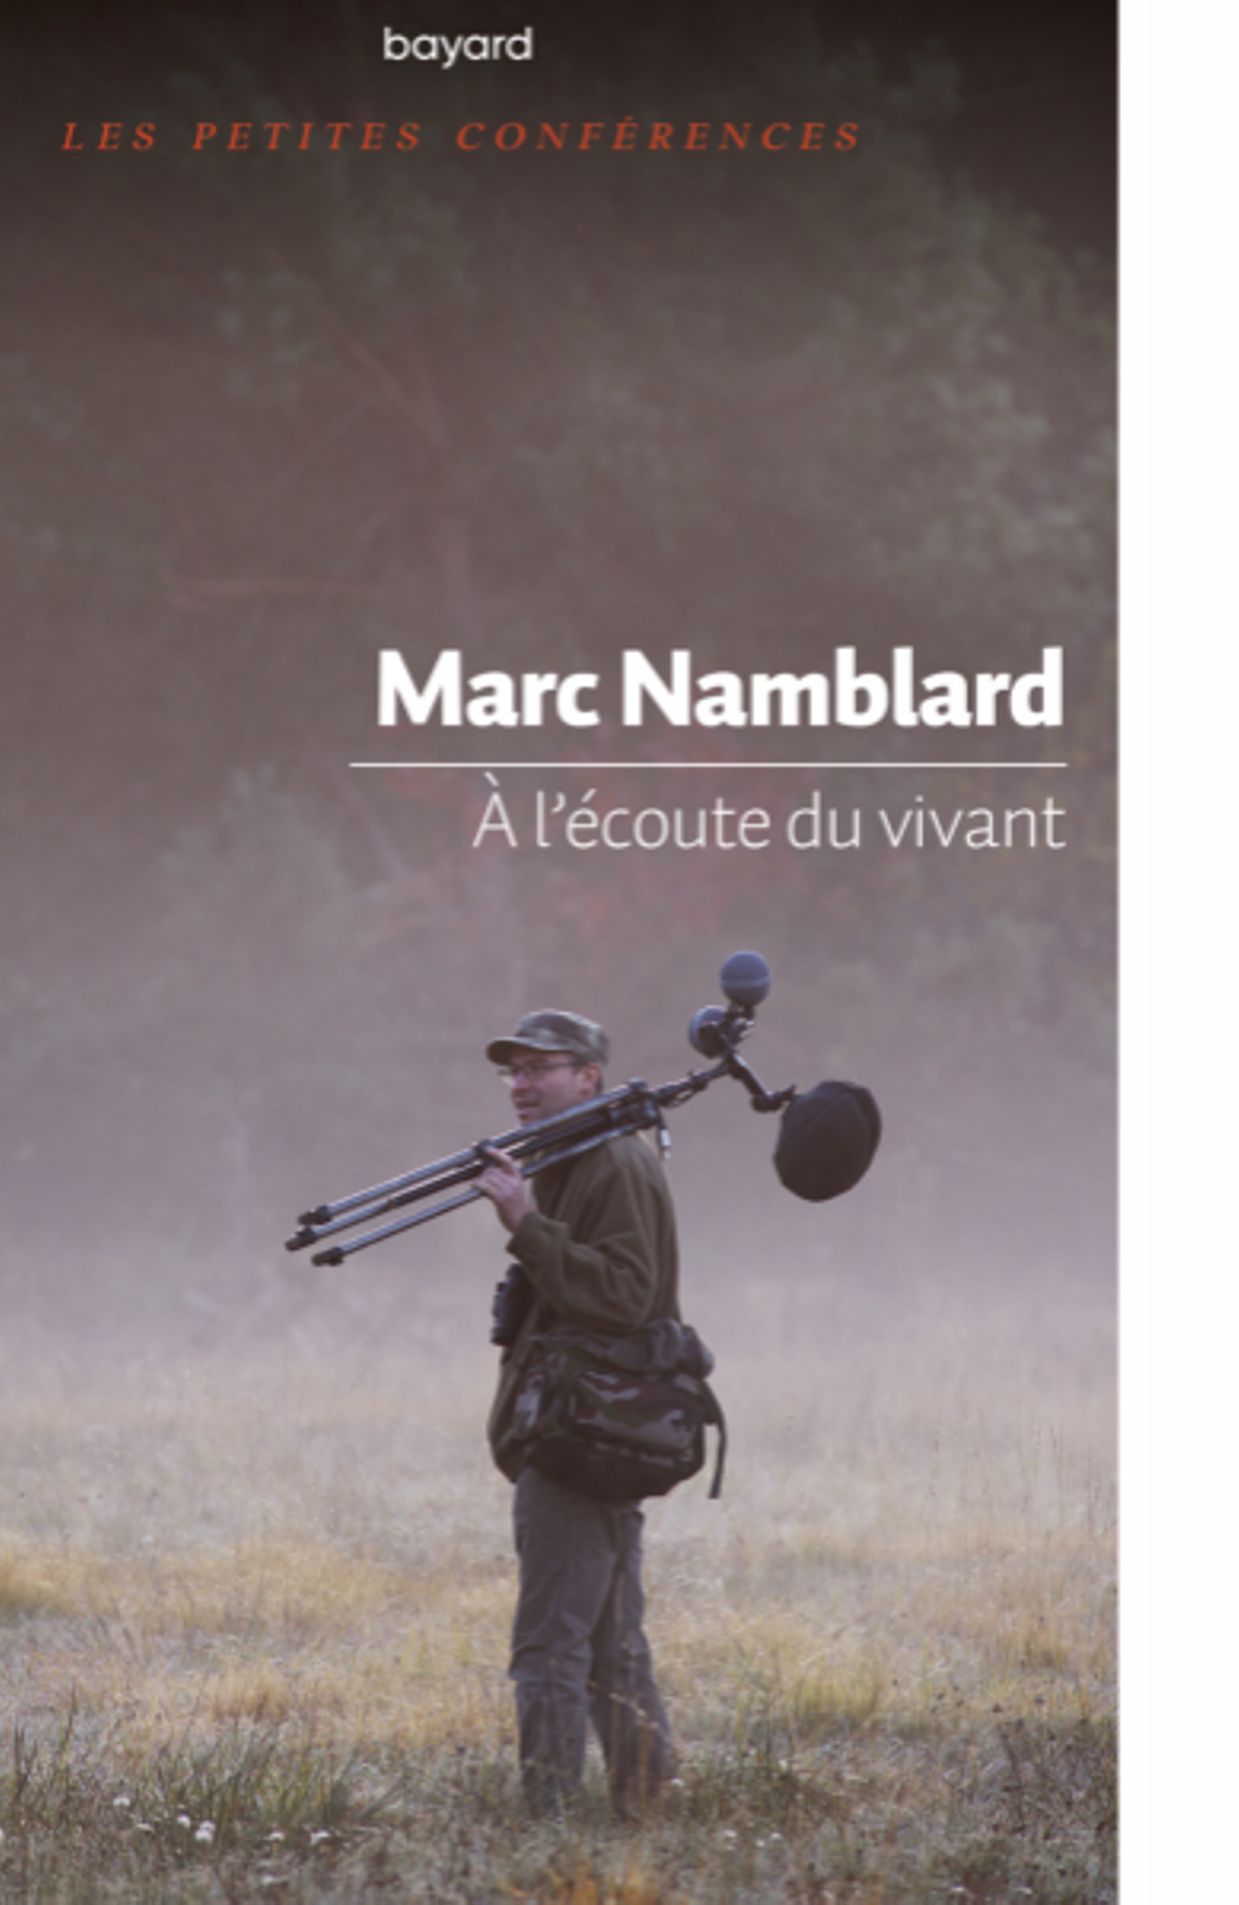 Couverture du livre de Marc Namblard 'A l'écoute du vivant'